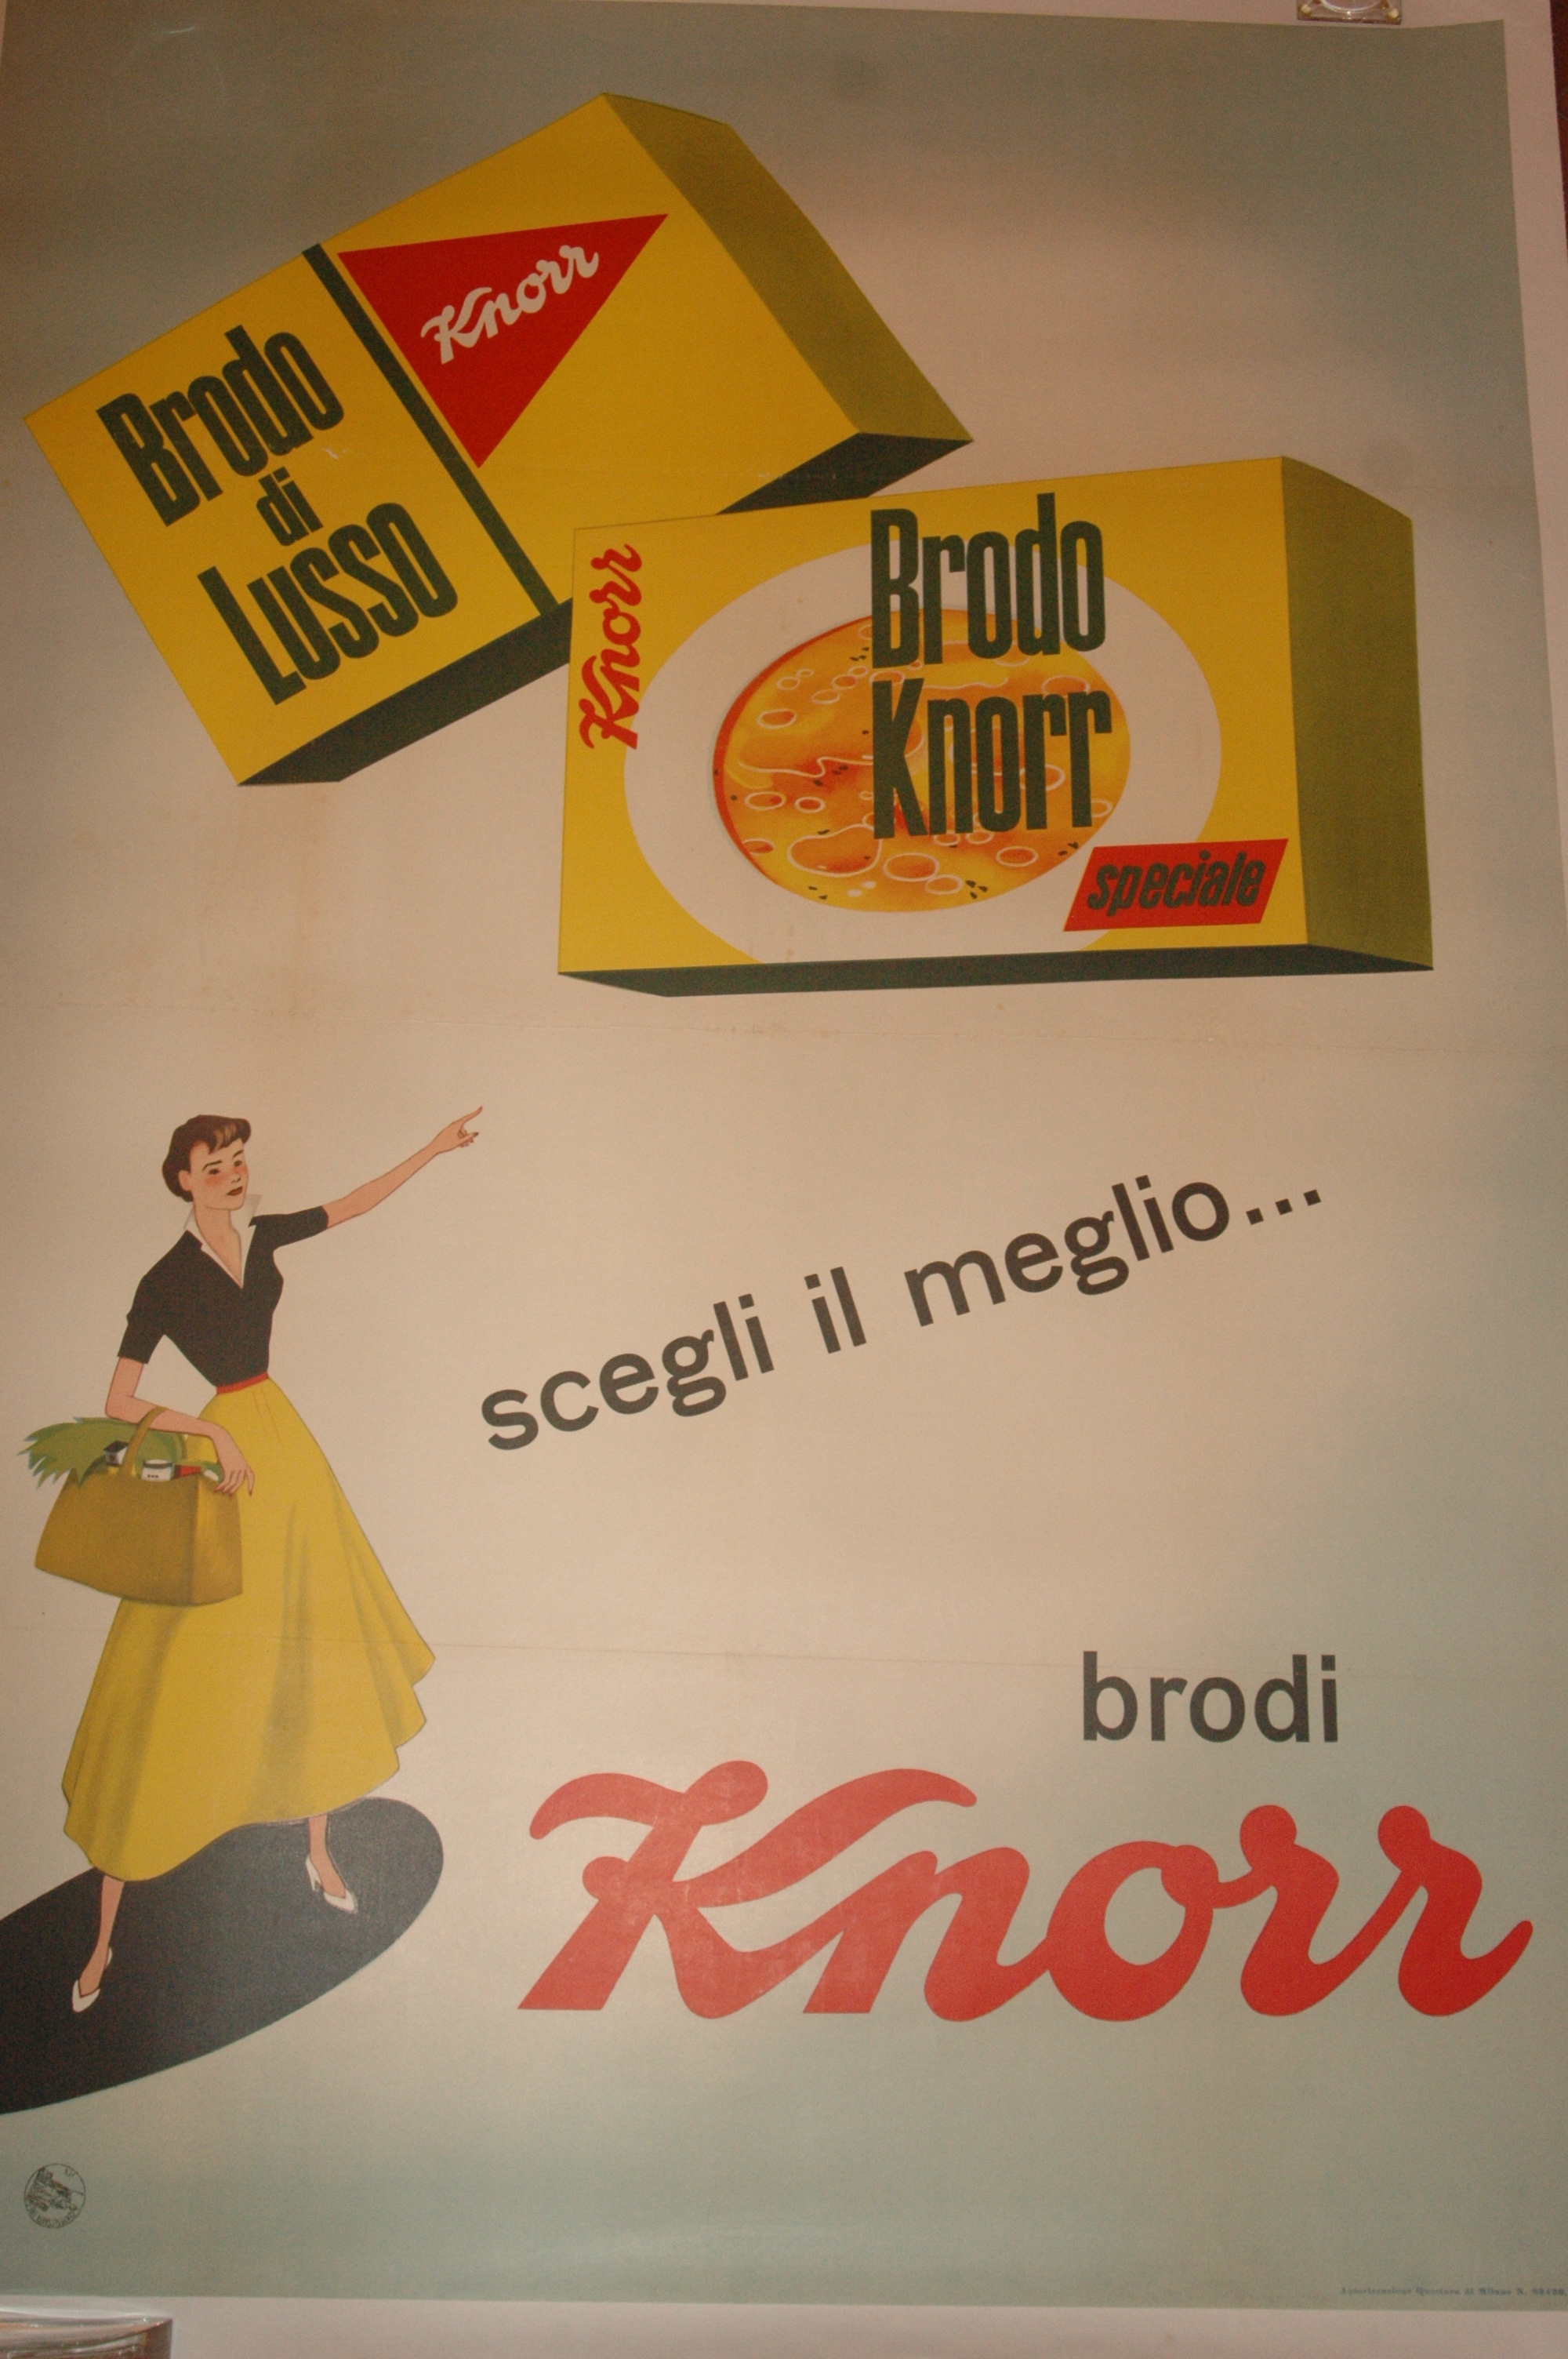 antiquariato: Knorr